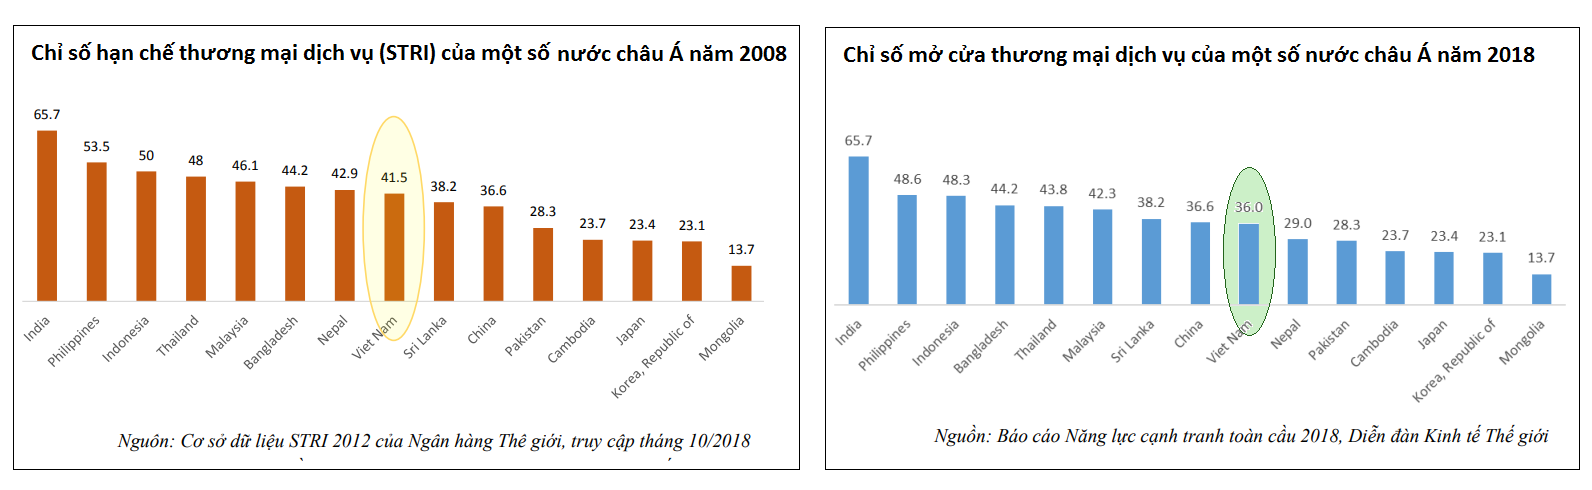 Các chỉ số vè mức độ tự do hóa thương mại dịch vụ của Việt Nam năm 2008 và 2018